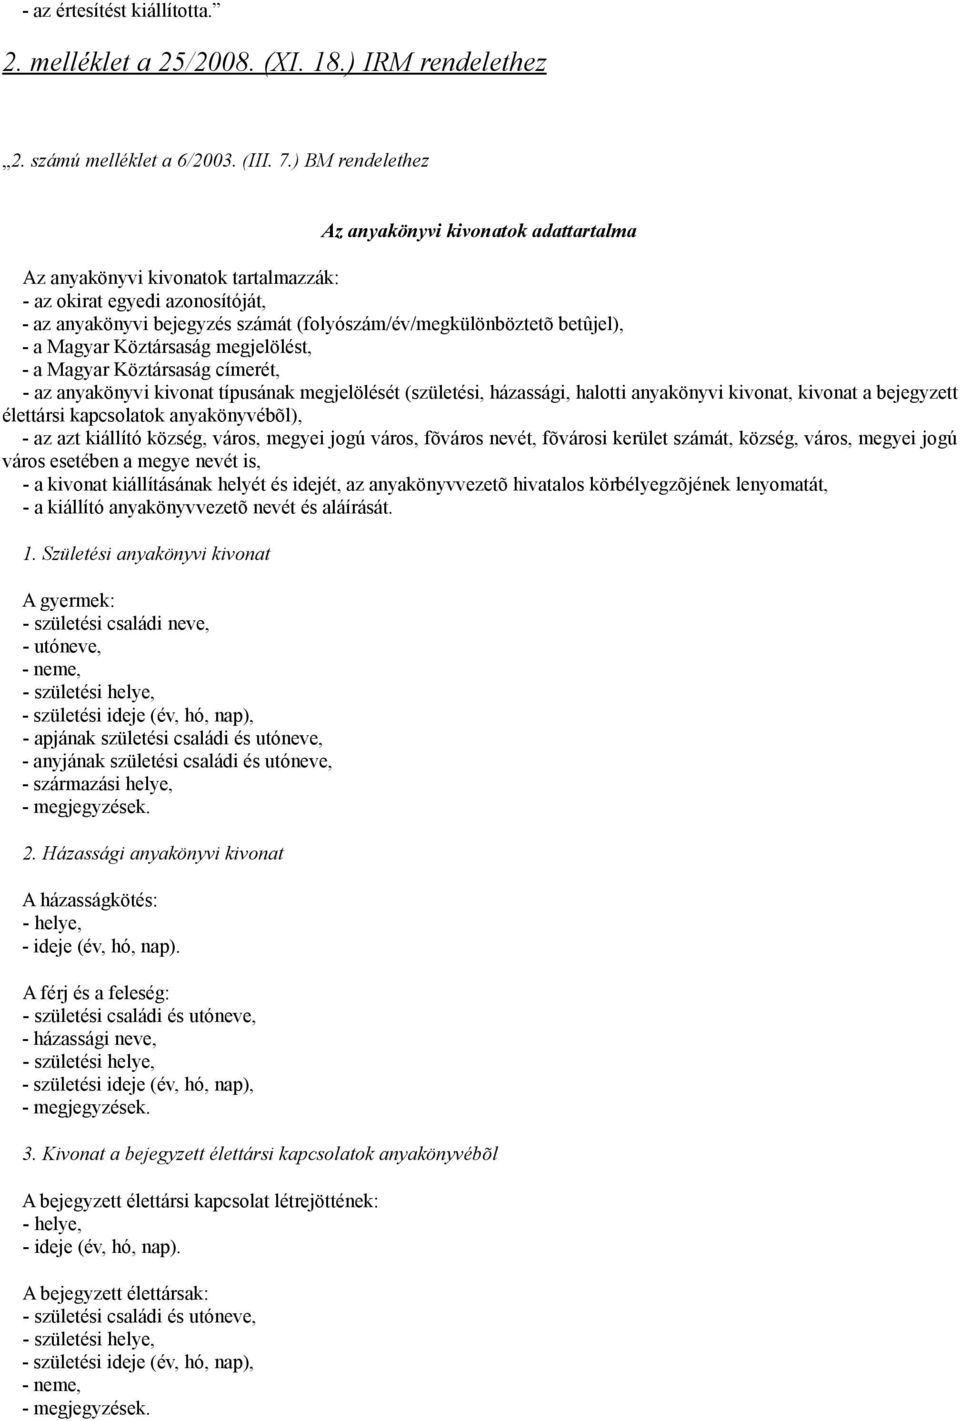 a Magyar Köztársaság megjelölést, - a Magyar Köztársaság címerét, - az anyakönyvi kivonat típusának megjelölését (születési, házassági, halotti anyakönyvi kivonat, kivonat a bejegyzett élettársi